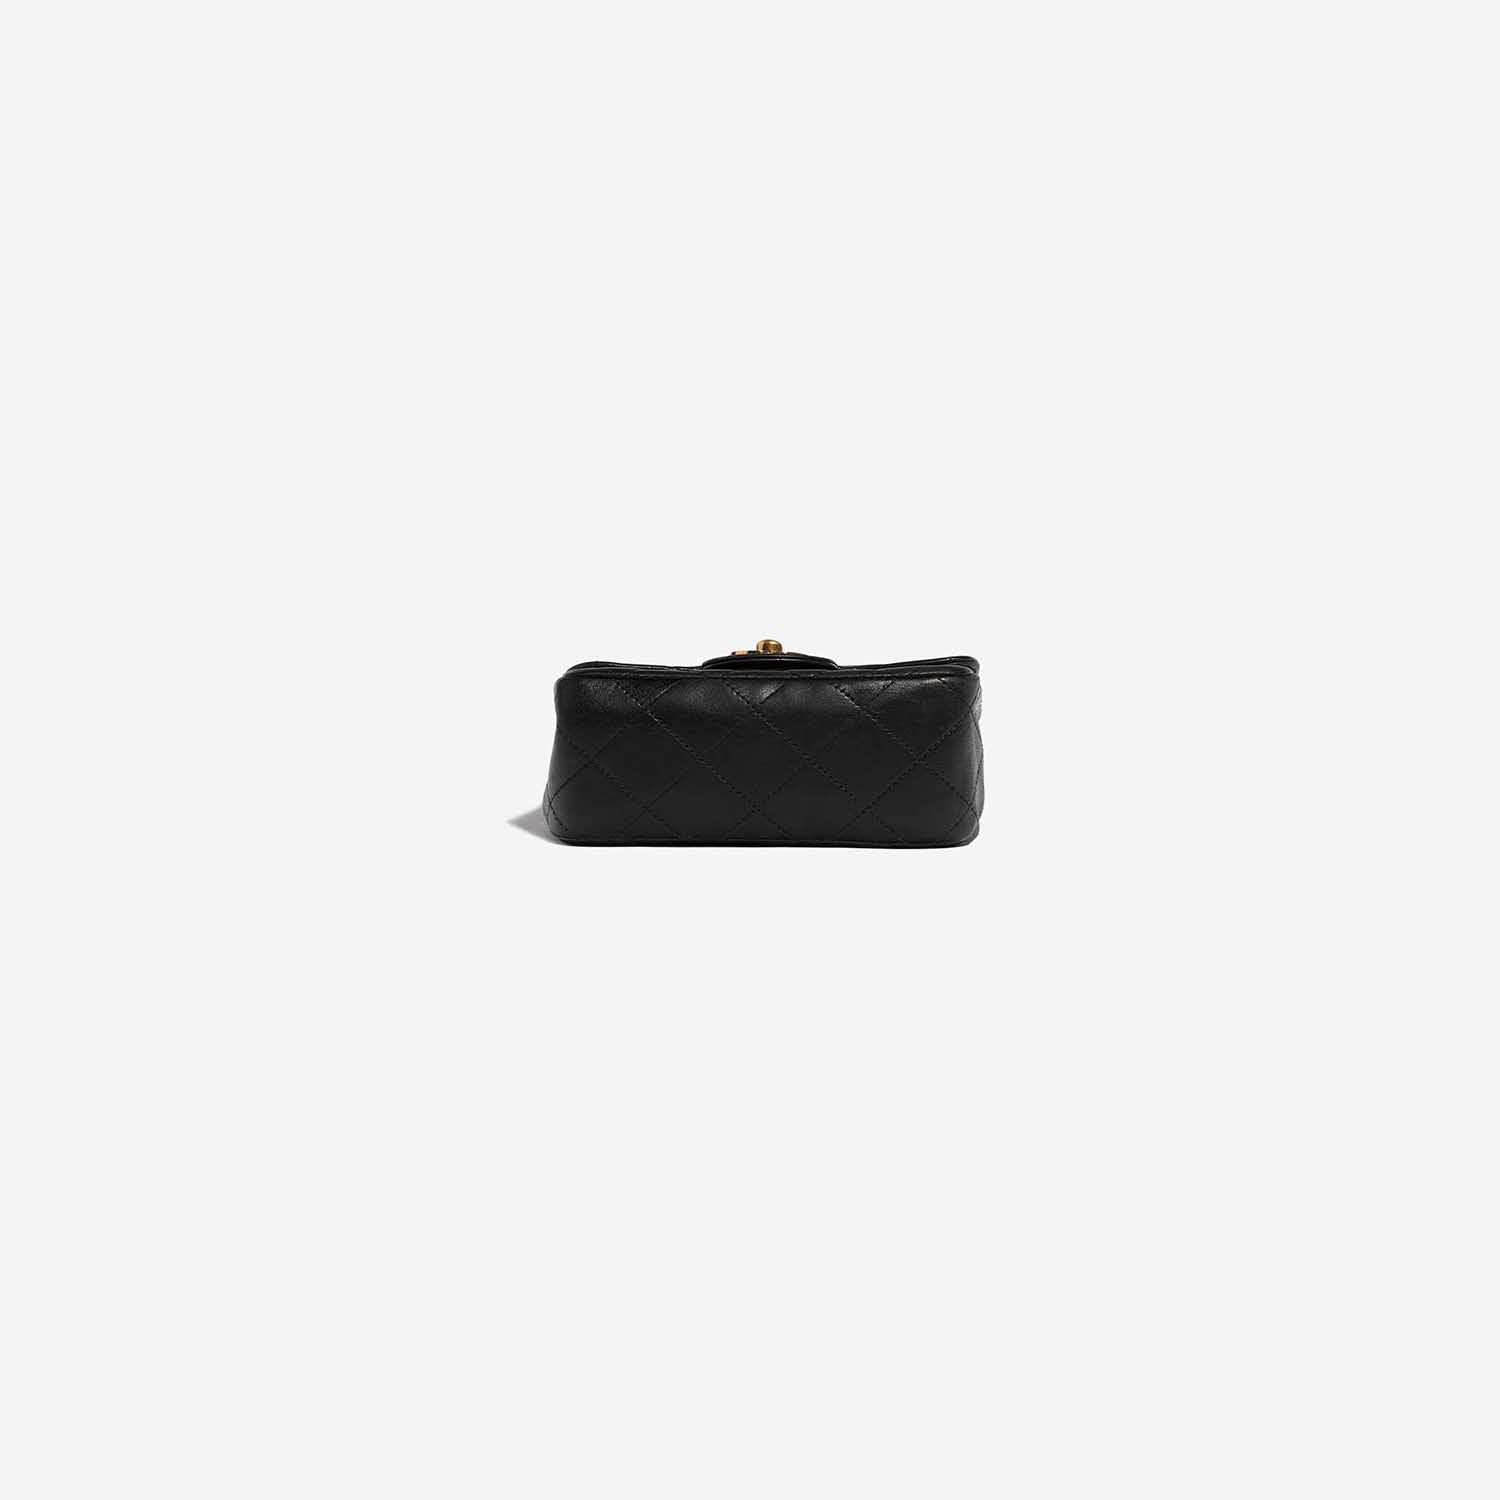 Sac Chanel d'occasion Timeless Poignée Petit Agneau Noir Fond Noir | Vendez votre sac de créateur sur Saclab.com